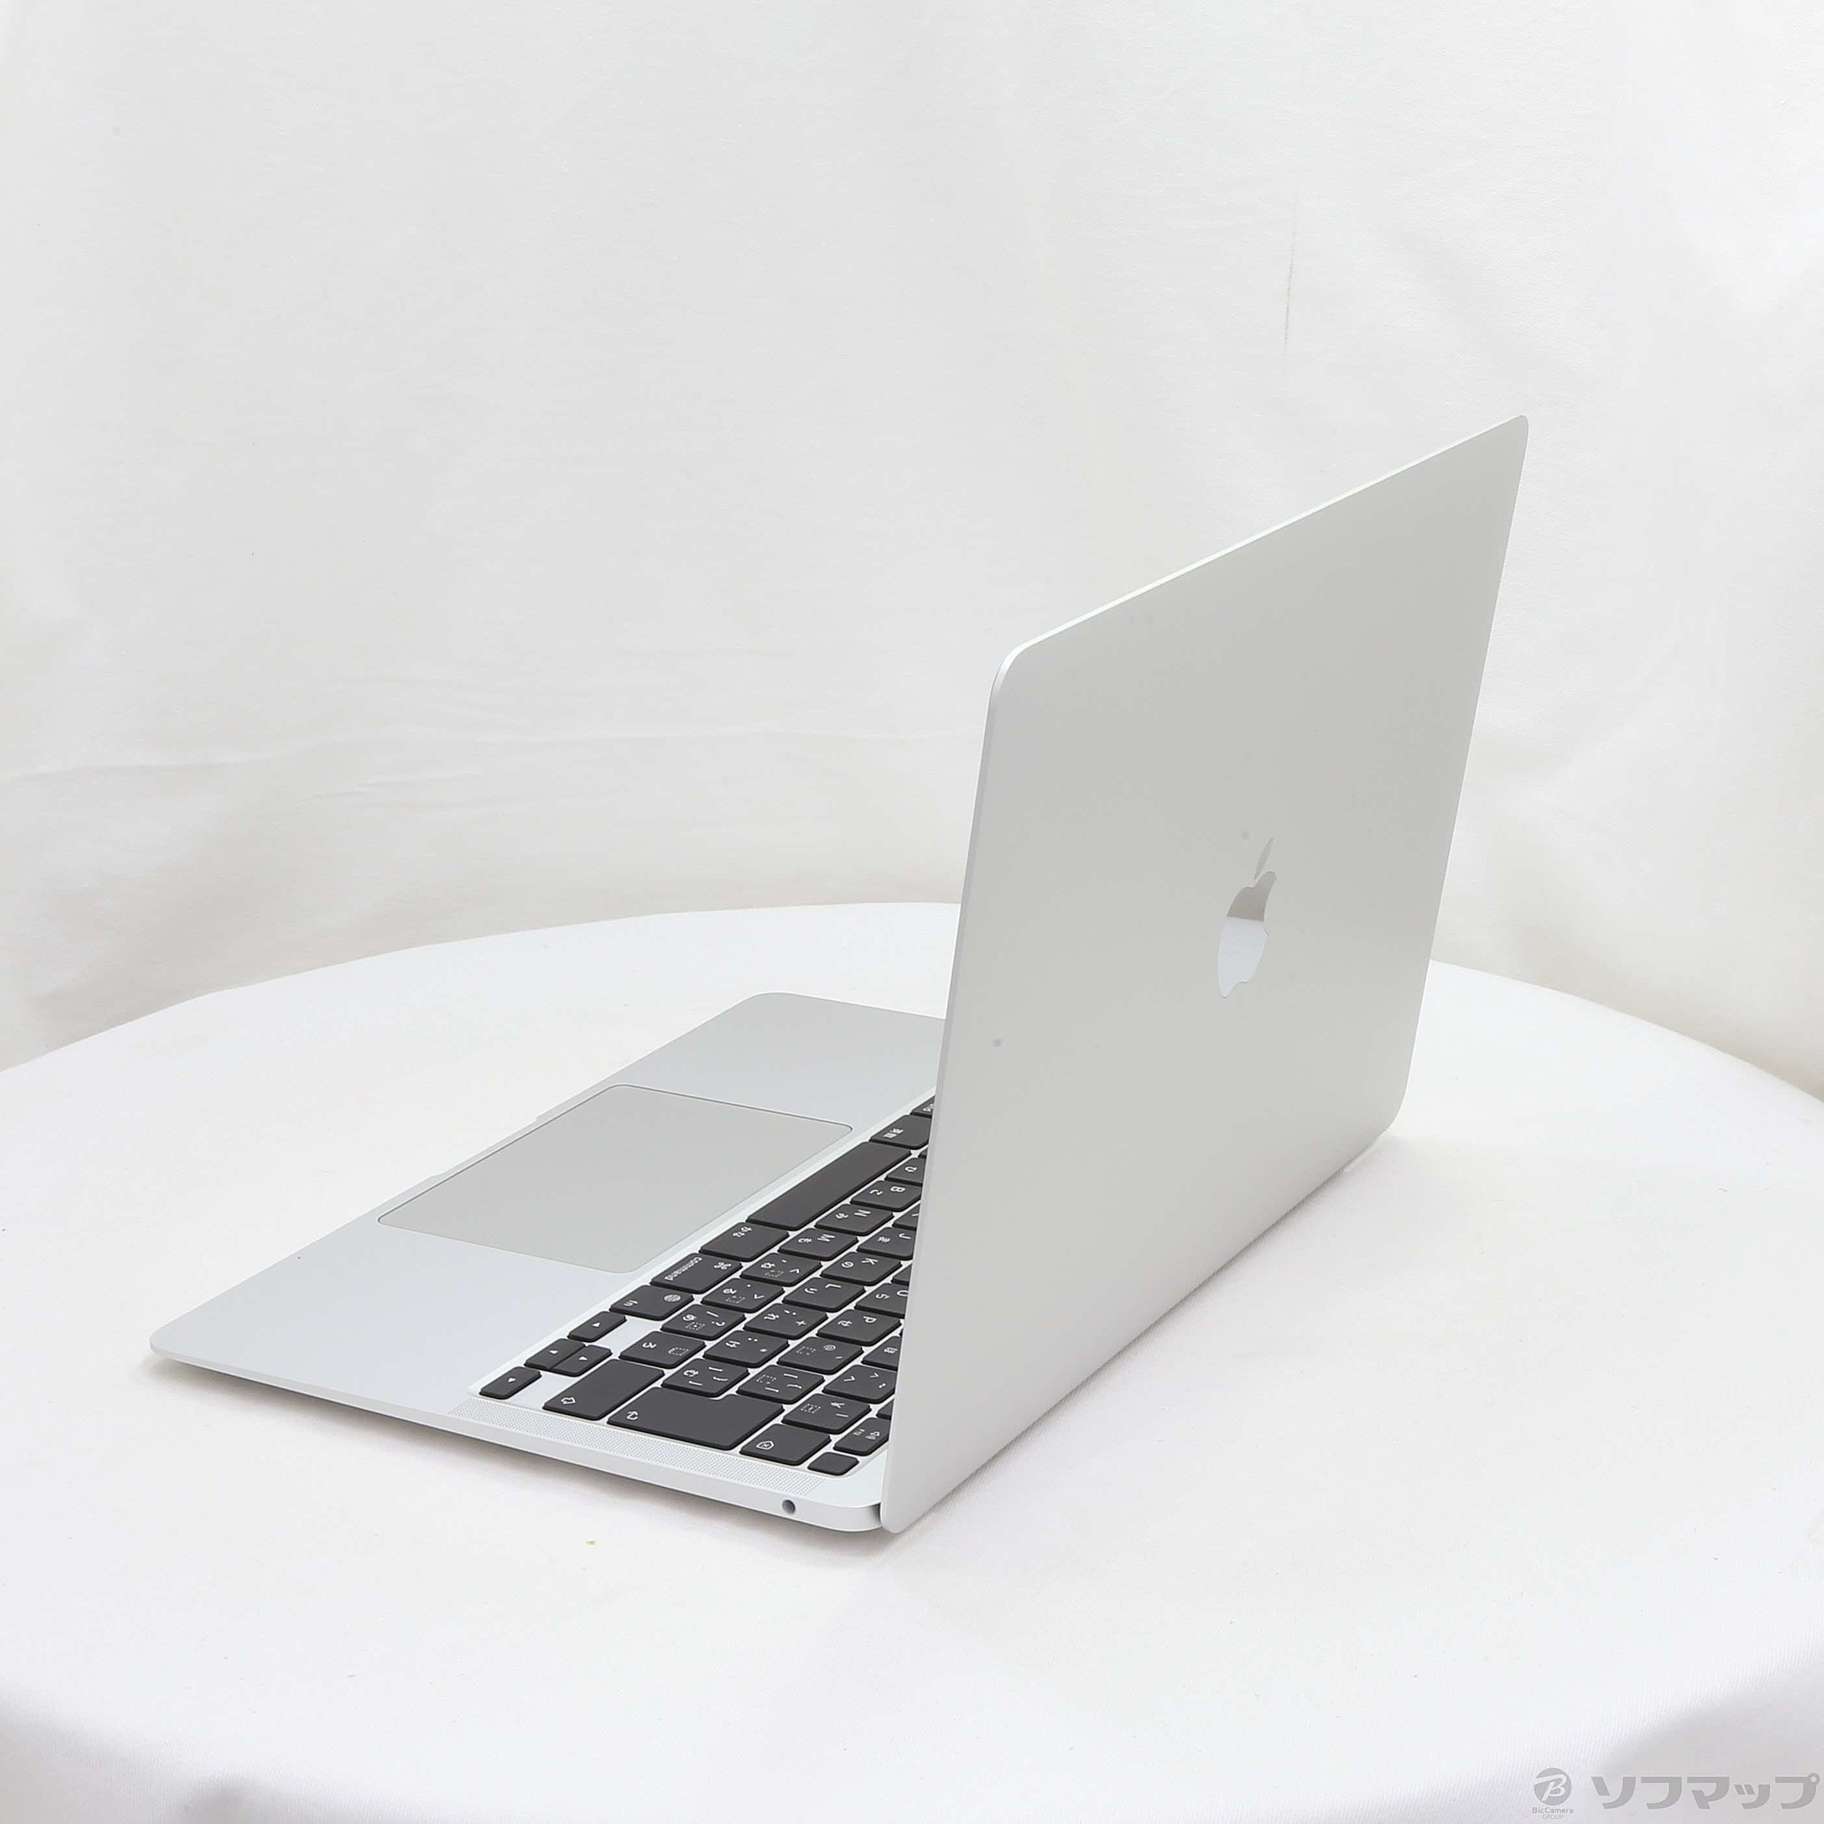 MacBook Air M1 2020 16GB シルバー